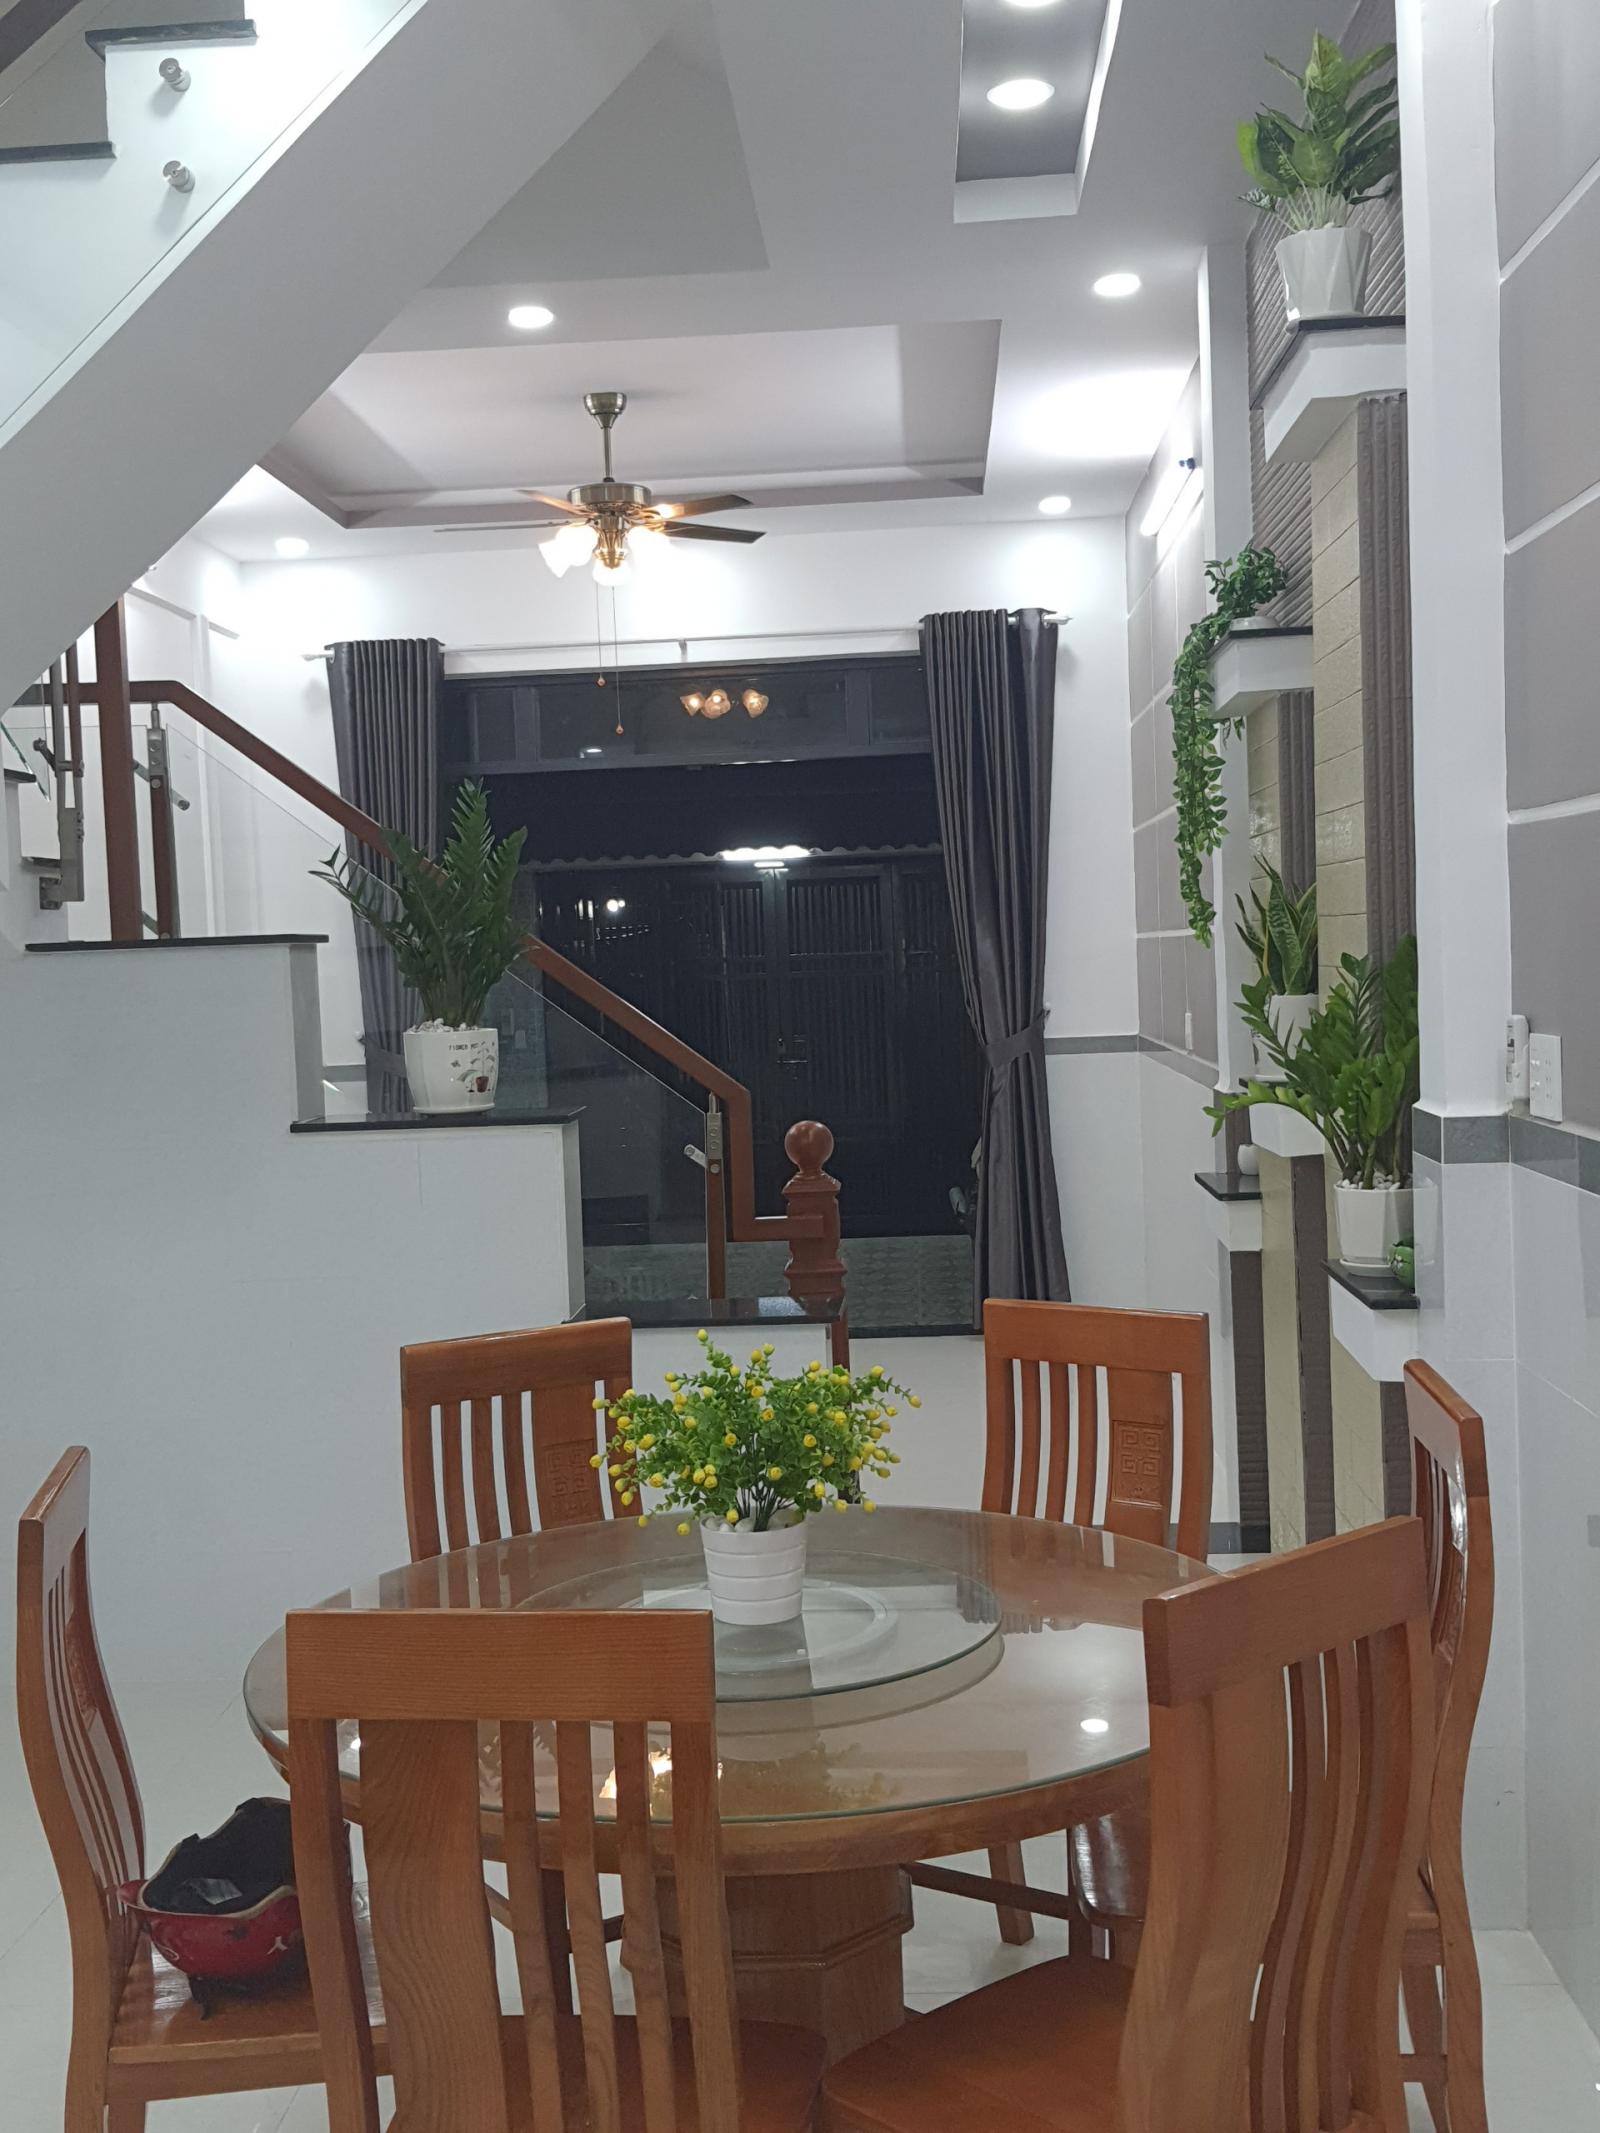 Bán Nhà mới hoàn thiện,hẻm 39 đường số 10 Linh XuânThủ Đức,LH 0909428959. 